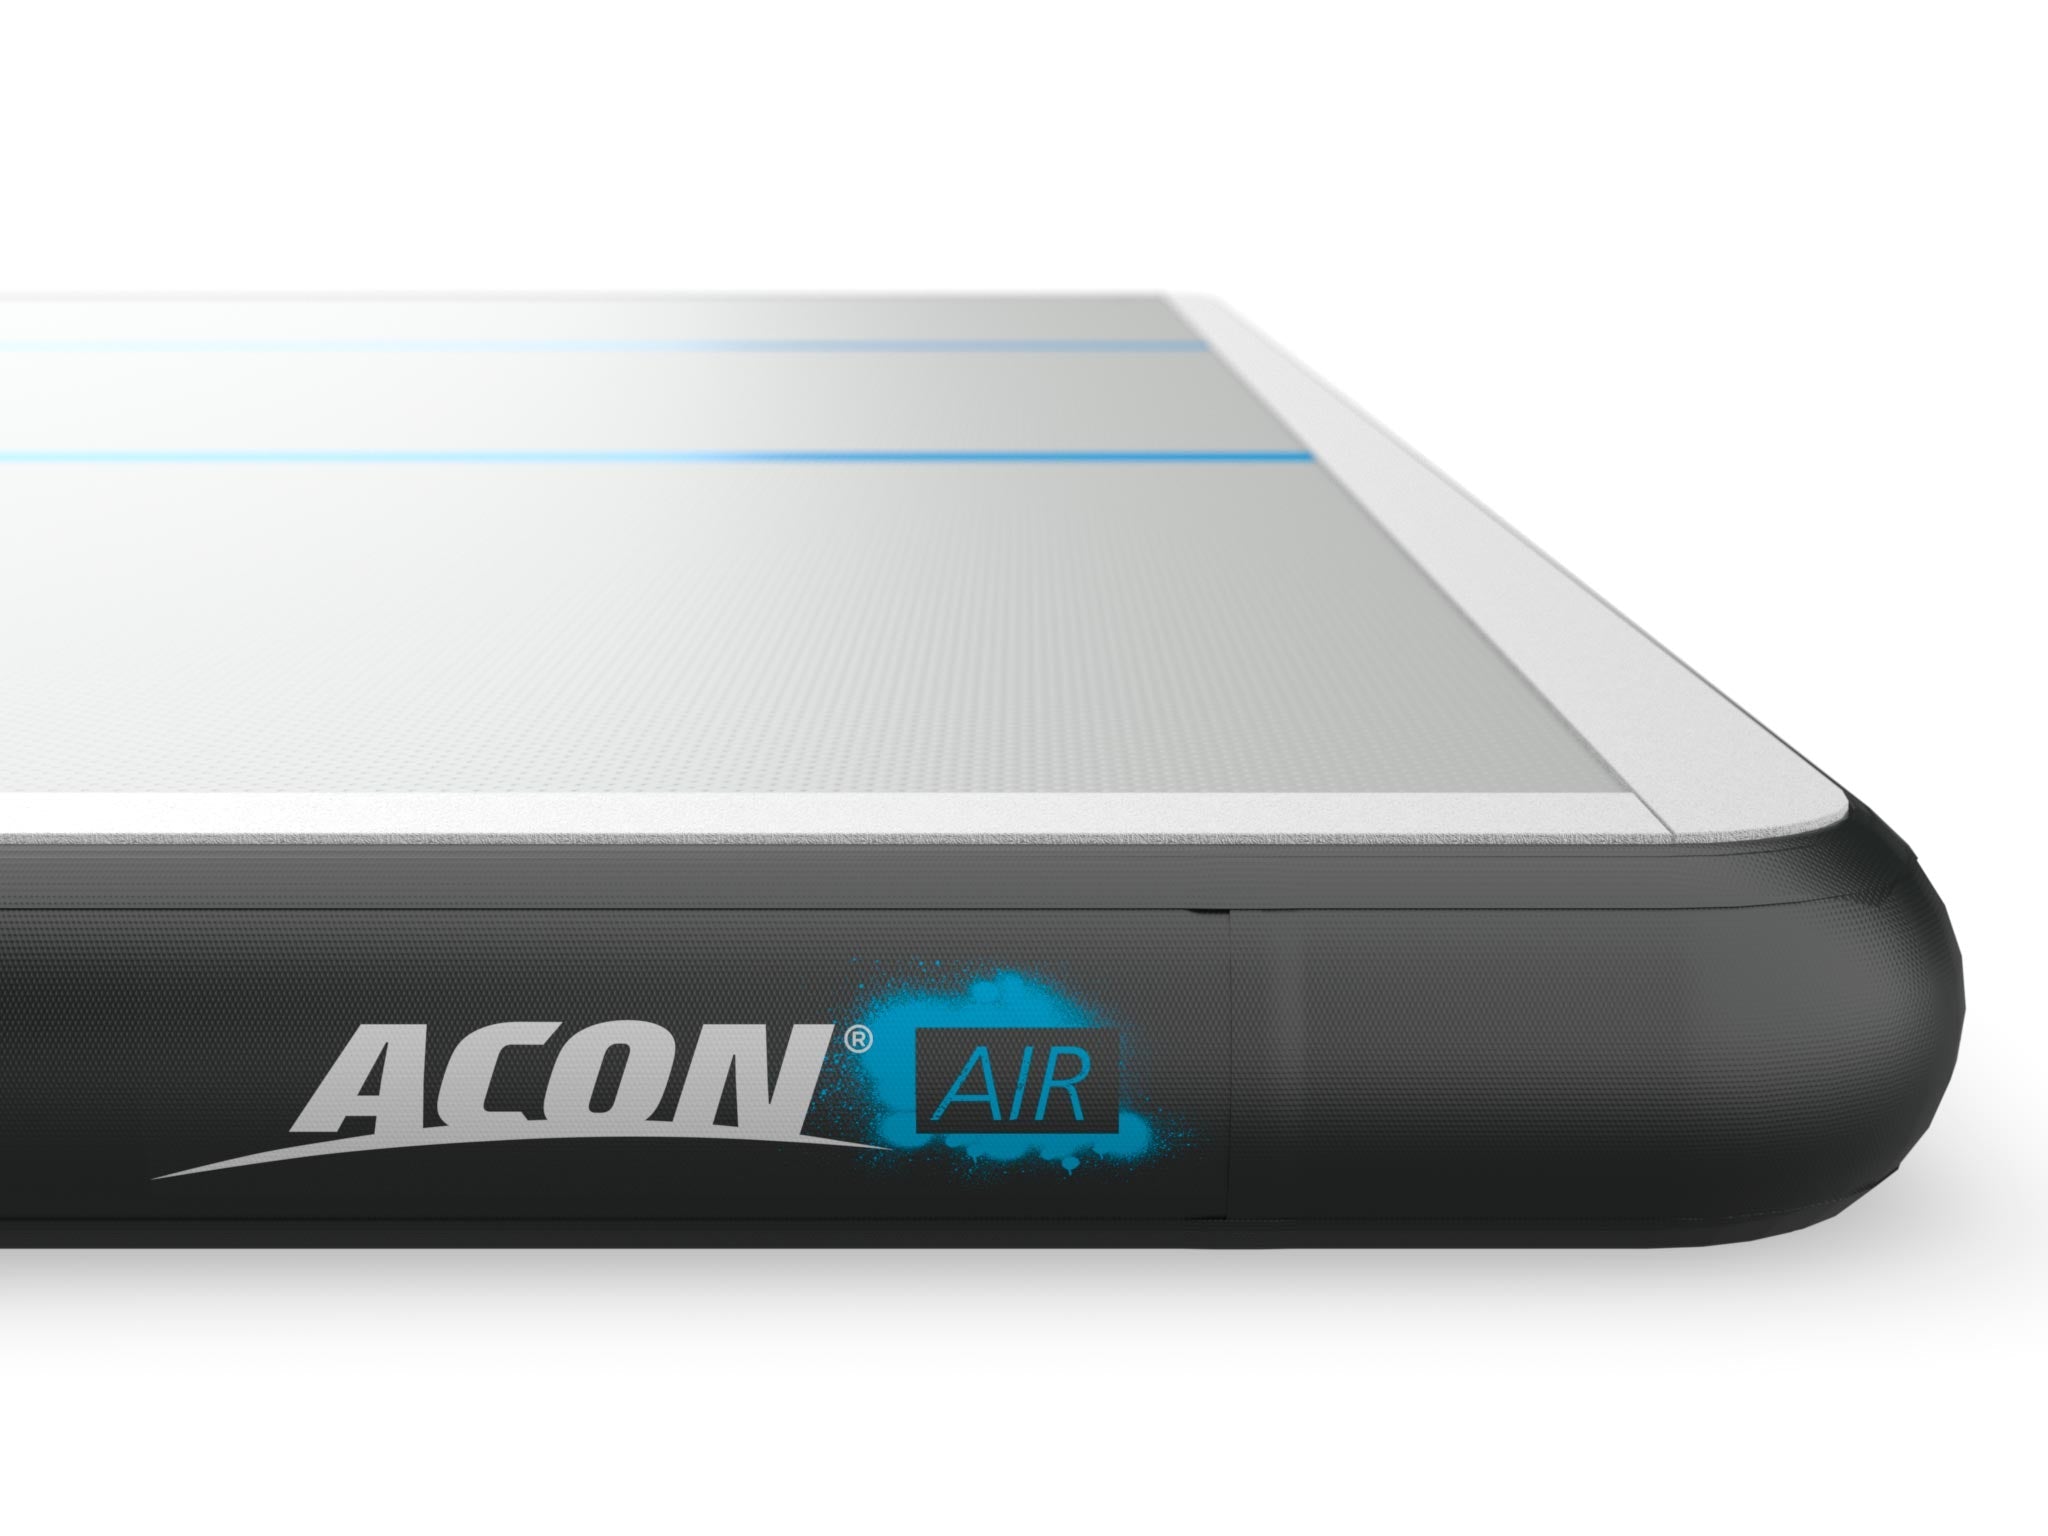 ACON AirTrack detail - acon24.com